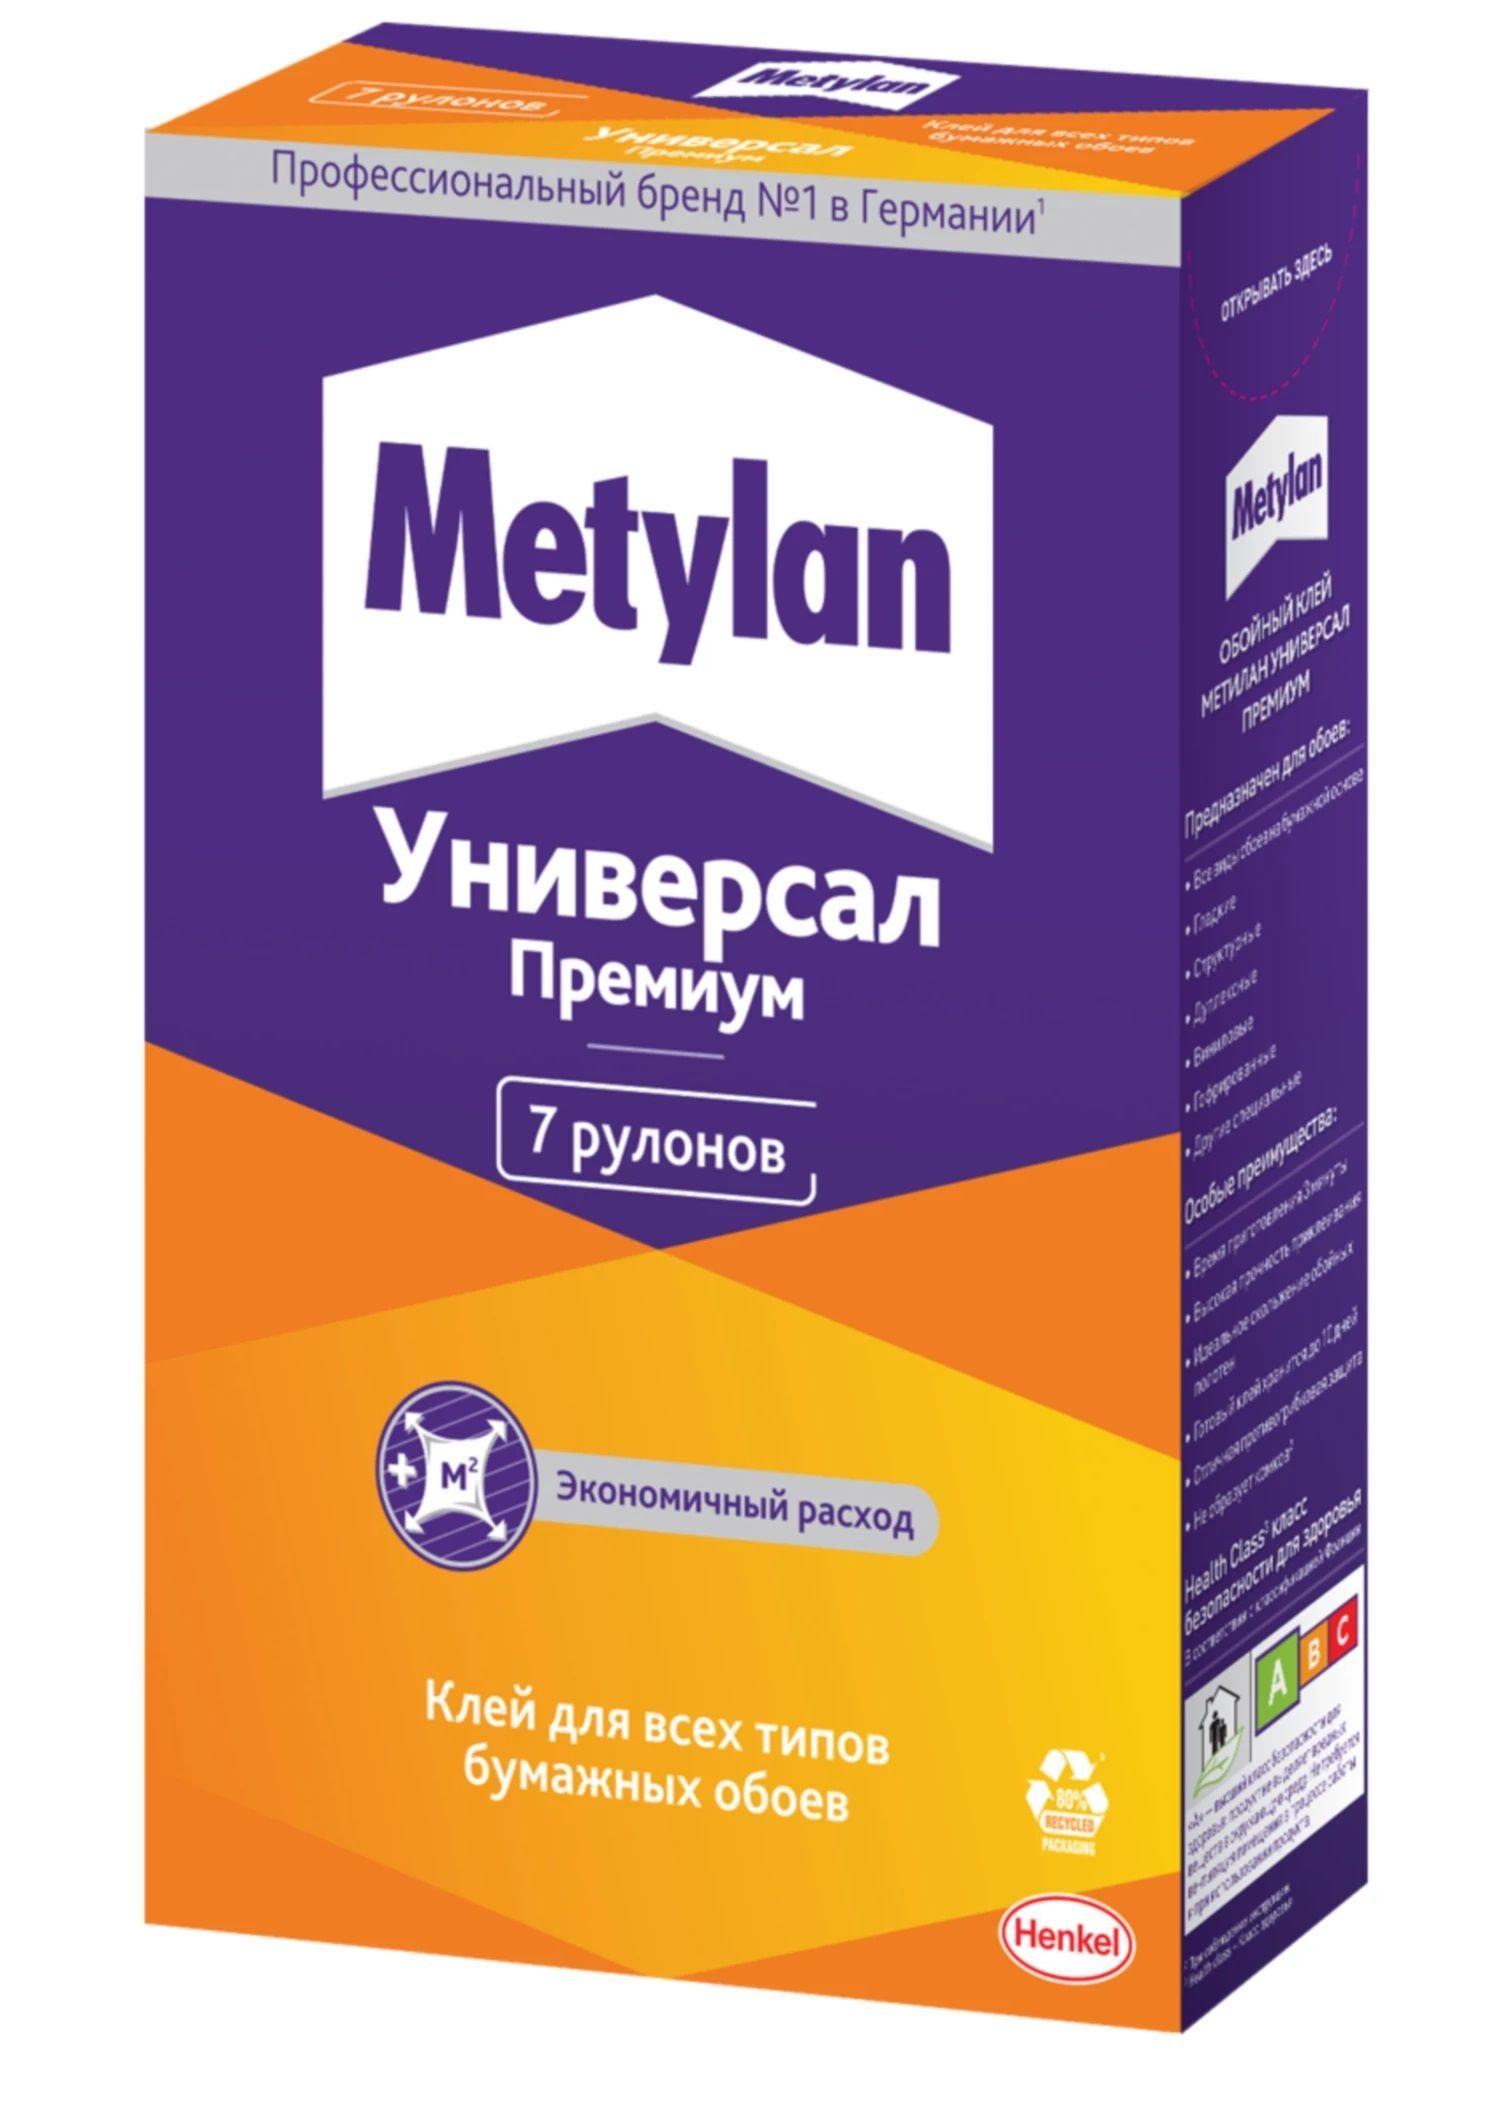 Metylan клей для обоев. Клей обойный Metylan универсал премиум 250г. Метилан универсал премиум, 100г. Клей Метилан для флизелиновых обоев. Метилан универсал премиум, 500 г..